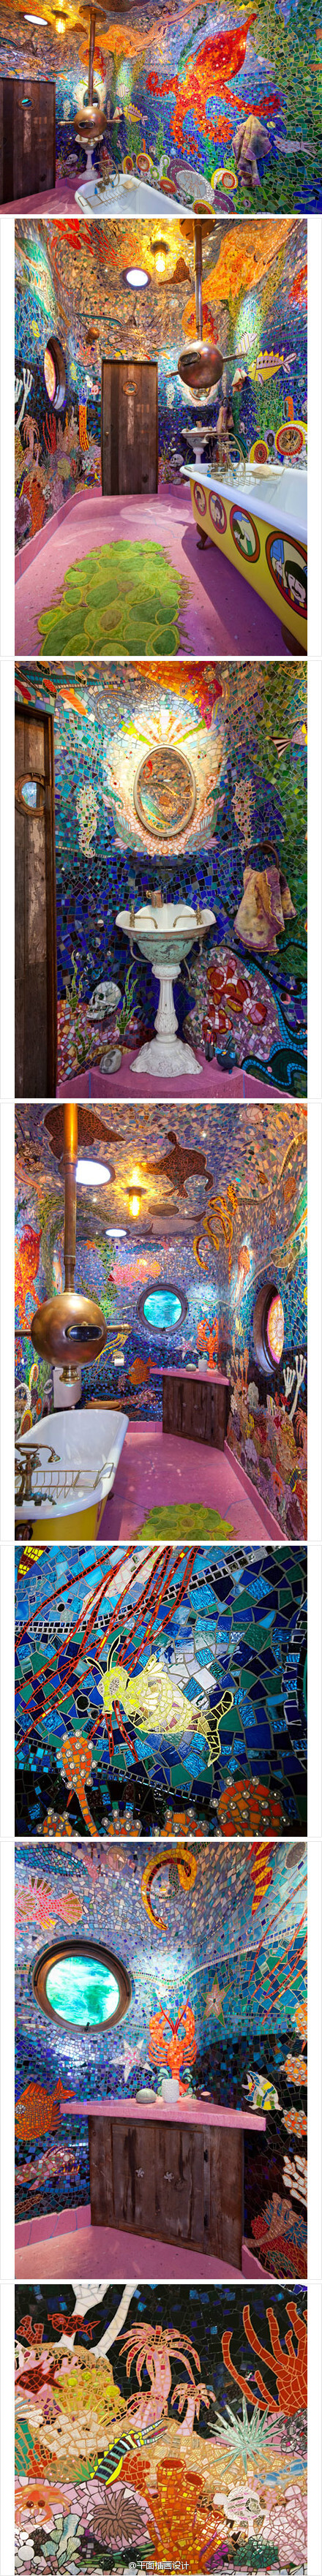 位于巴西的“Gaudi’s Beach House”高迪海滨别墅，由一群自由的疯狂的艺术家自由发挥创作。五彩马赛克将每个浴室装饰成一副副梦幻的蓝色海底世界，蓝色让人安静，海底世界让人迷幻，沐浴其中，如沐清爽海风，舒畅。—